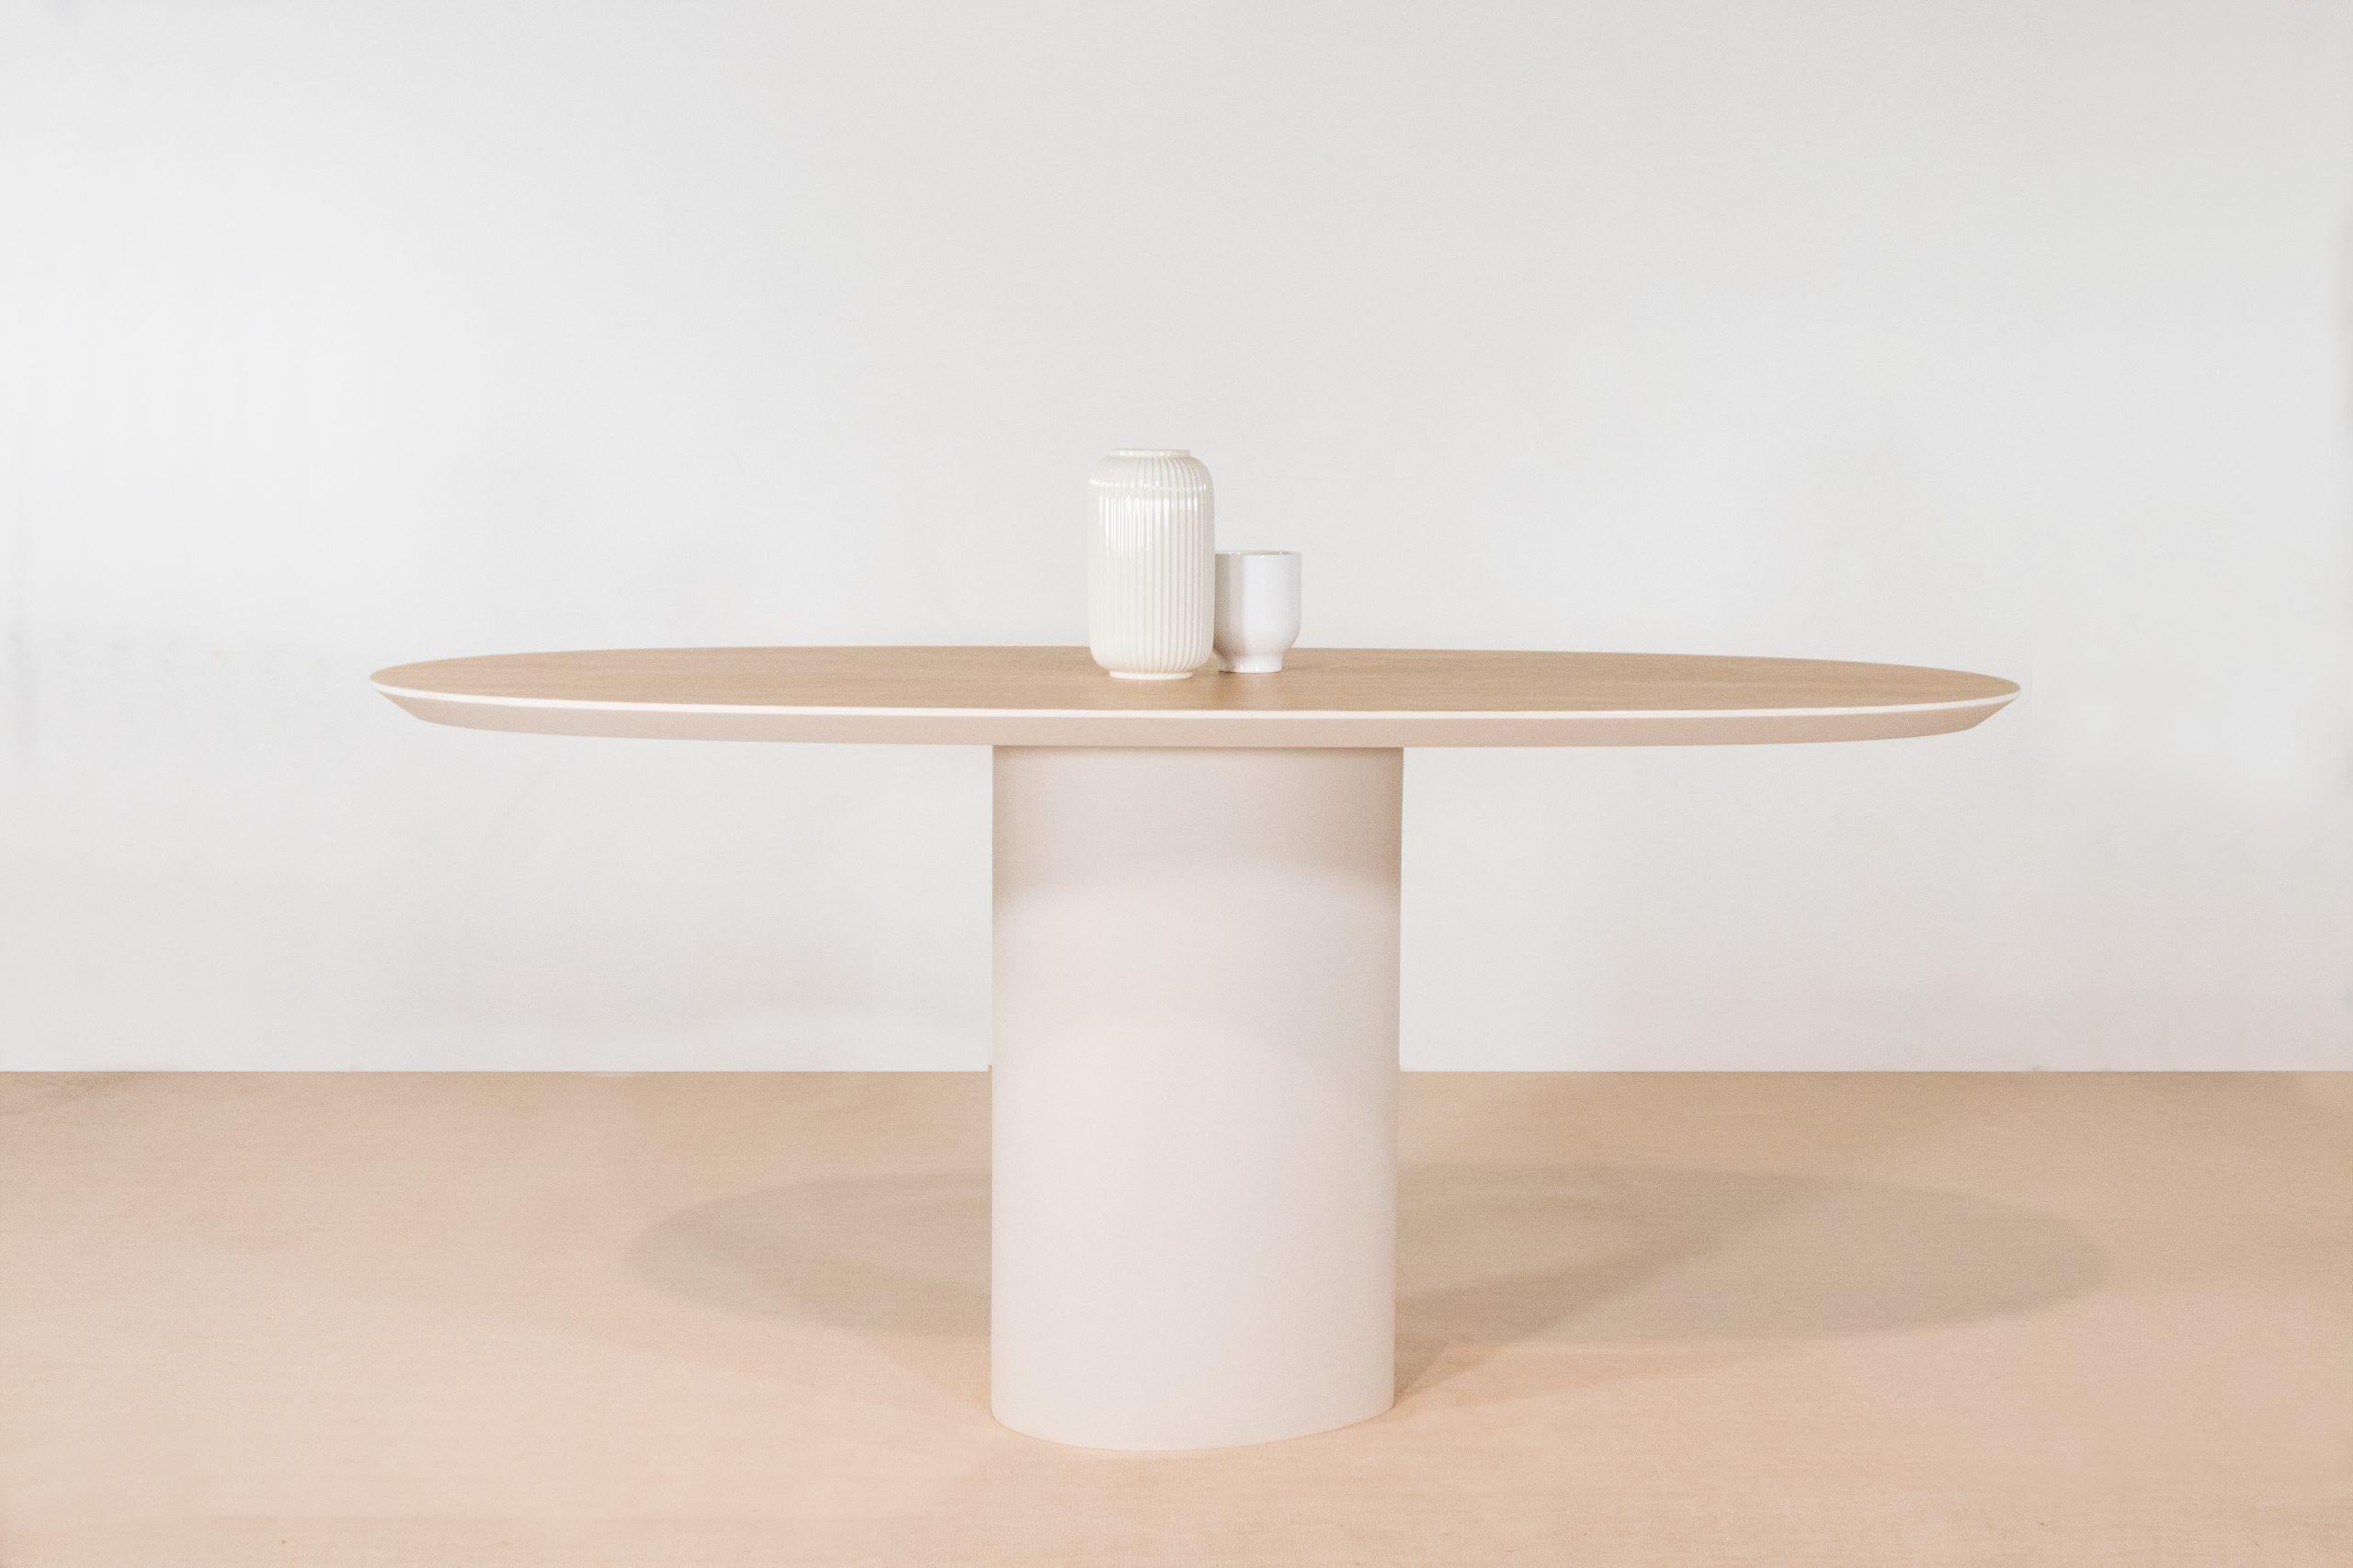 Table Eve faite à la main et signée par Gigi Design
Dimensions : L 160 x P 75 x H 74 cm
Matériaux : Plateau de la table en chêne naturel, côté de la table et pieds en laque blanc cassé, avec intégration de nacre et de sable.

La table Eve est une